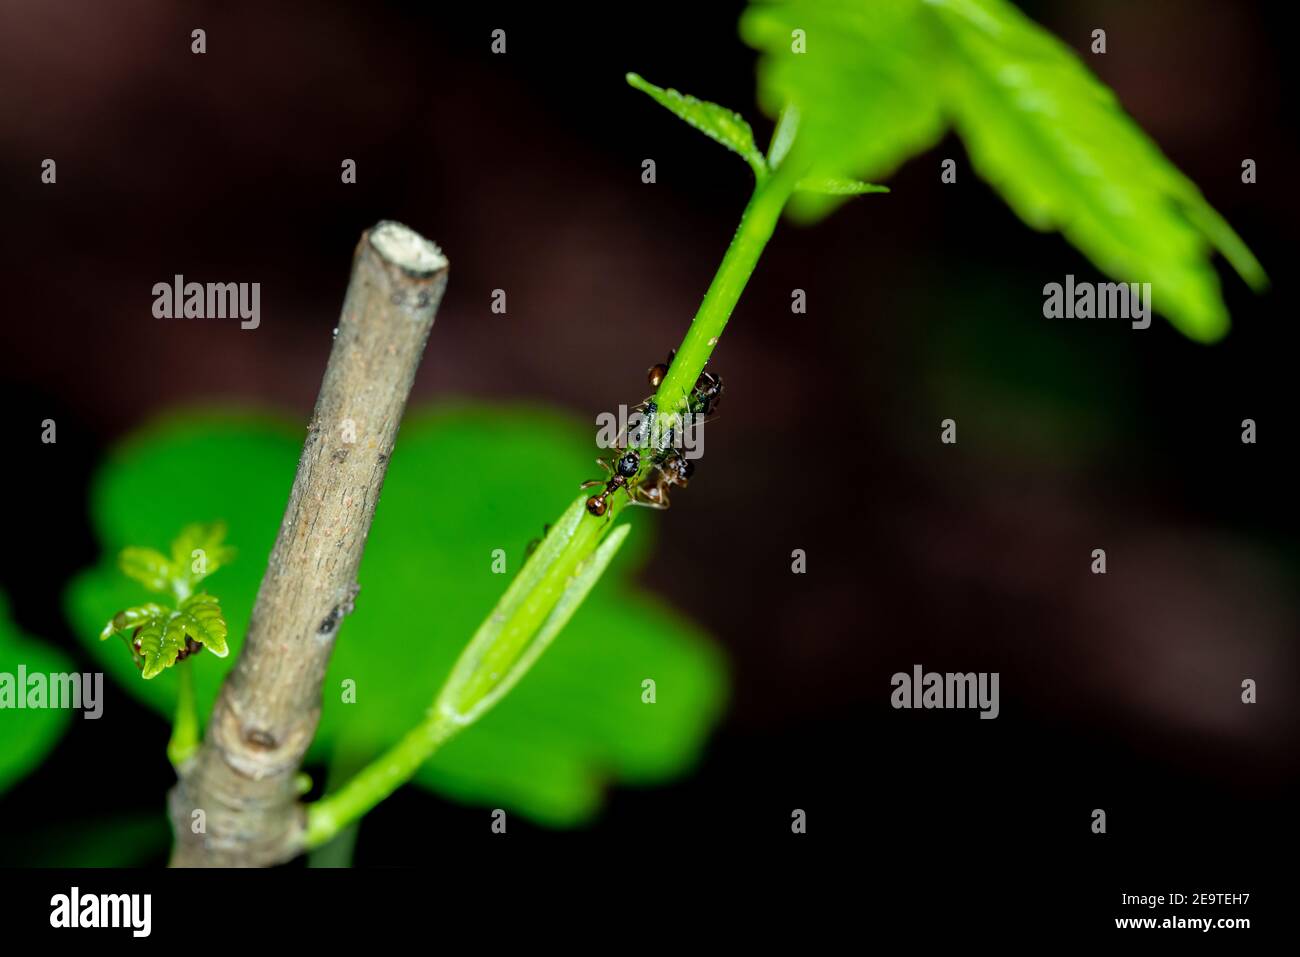 Hormigas/Ant que se derrite algunos áfidos en una planta verde/flor en un bosque alemán - foto macro Foto de stock